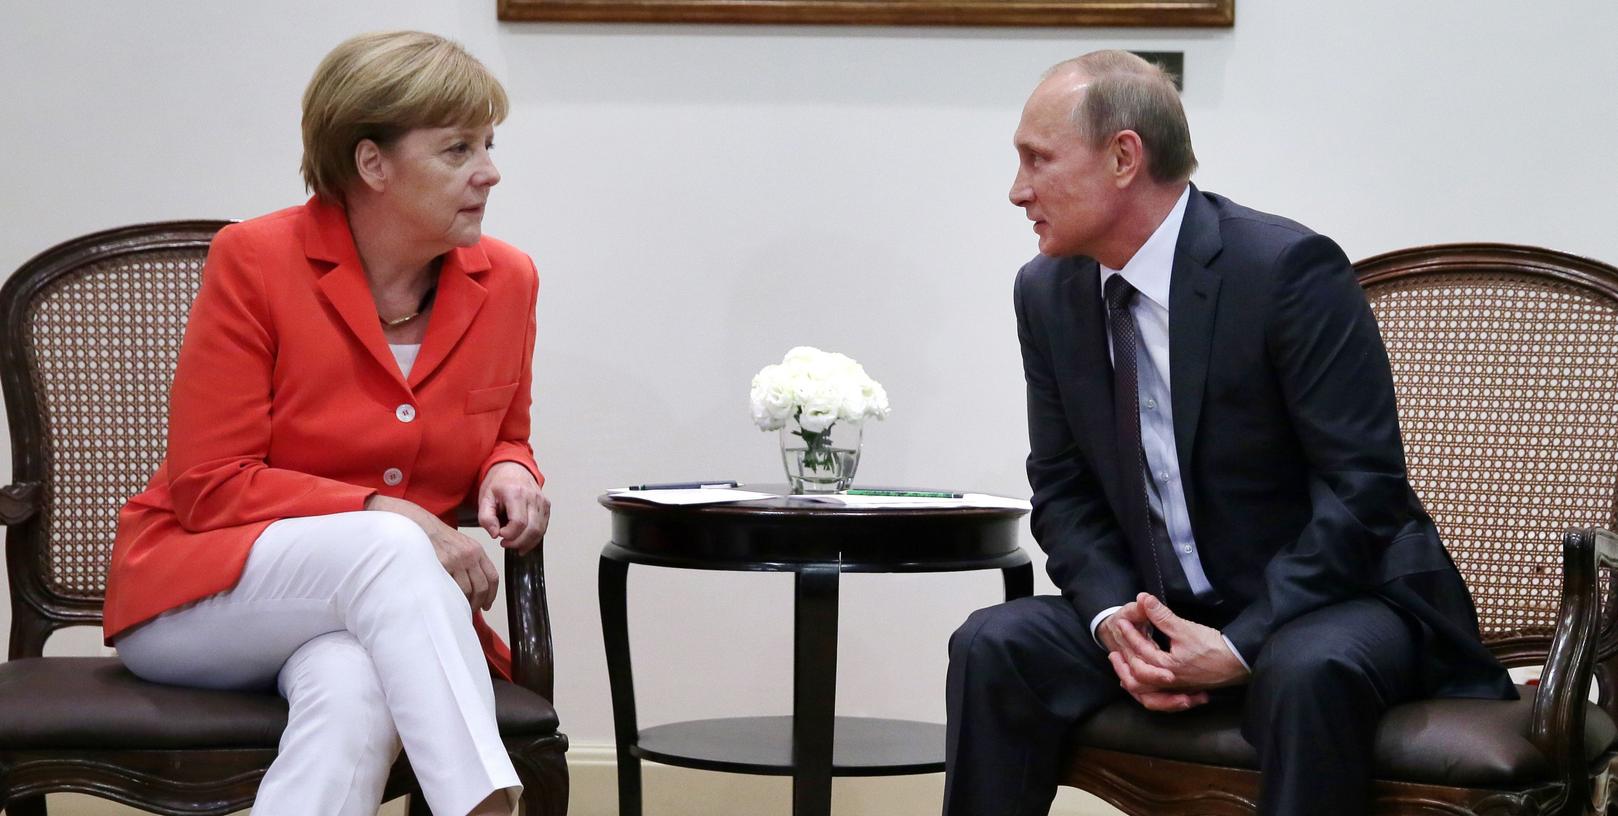 Keine Wohlfühlatmosphäre: Bei den Gesprächen zwischen Bundeskanzlerin Angela Merkel und Russlands Präsident Wladimir Putin geht es um heikle Themen wie zum Beispiel den Syrien-Konflikt.